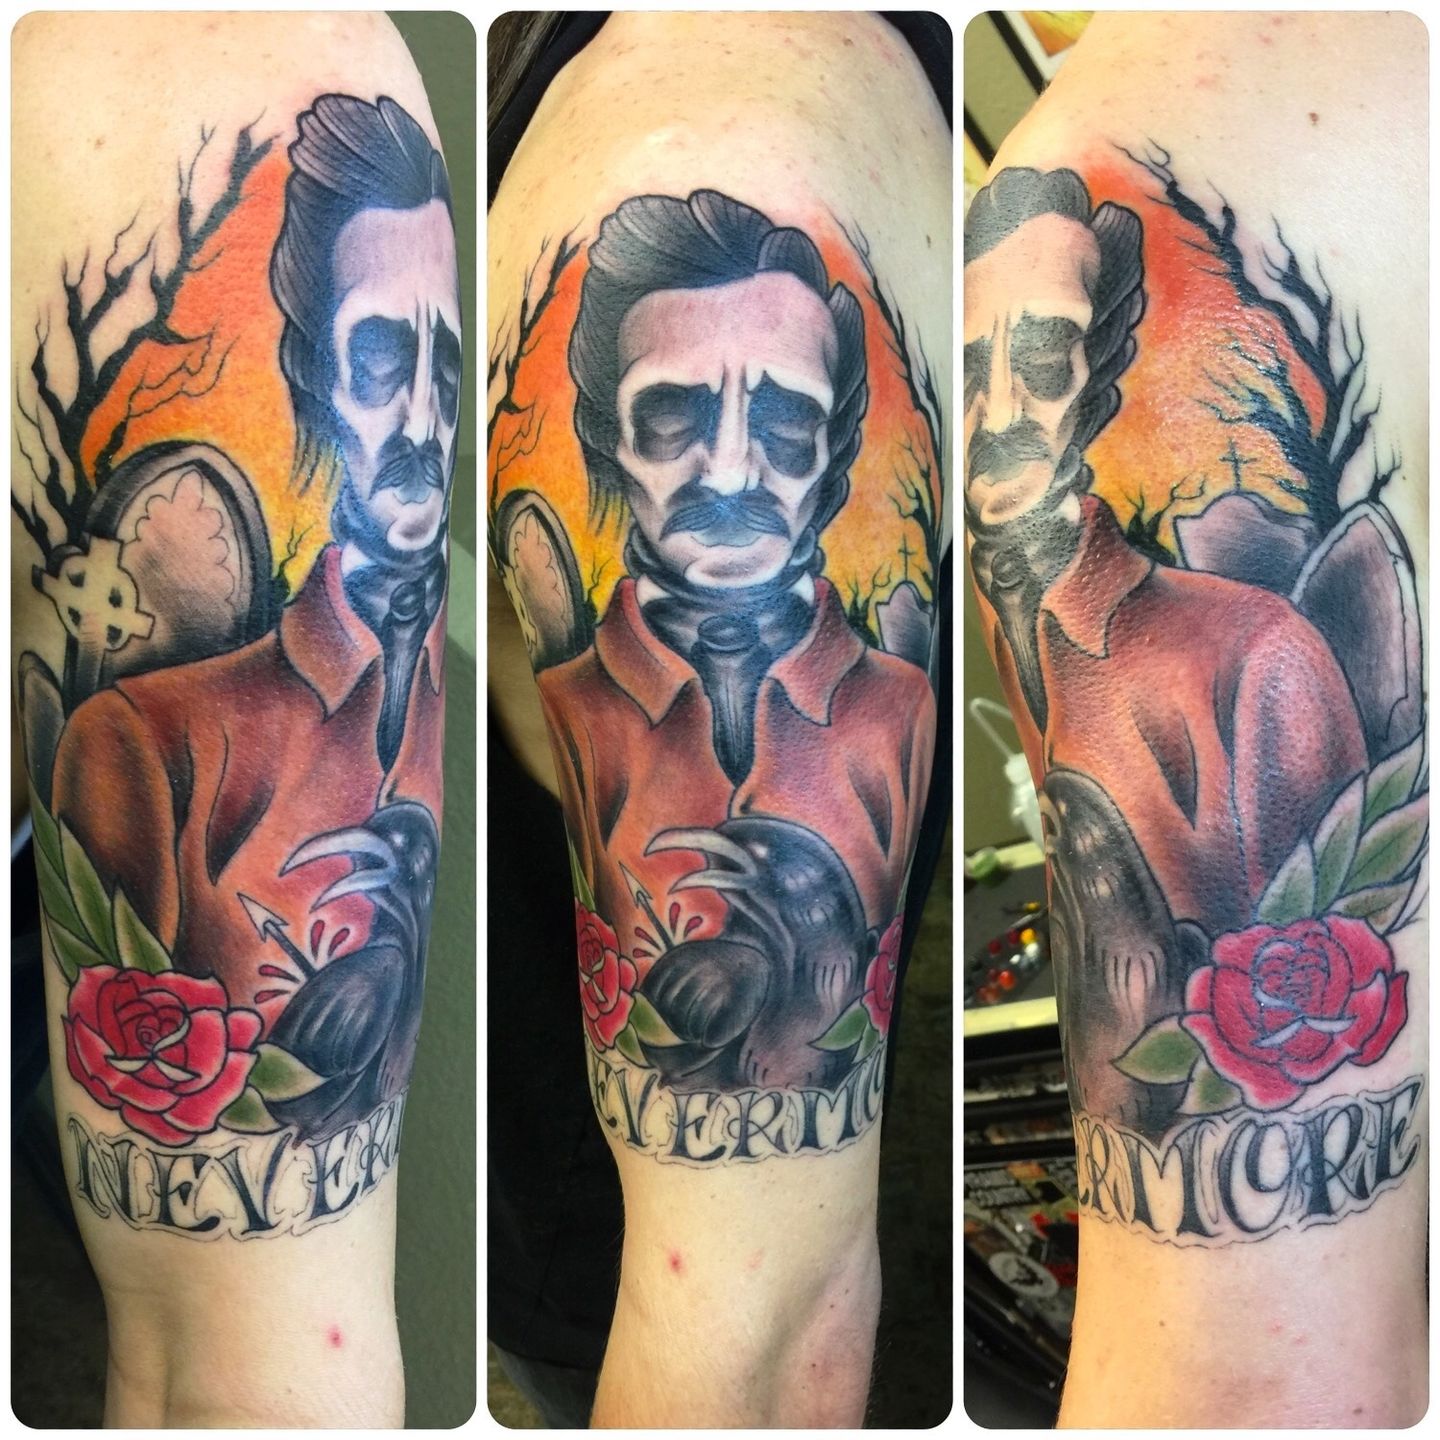 Zombie Edgar Allan Poe by Matthew Davidson TattooNOW